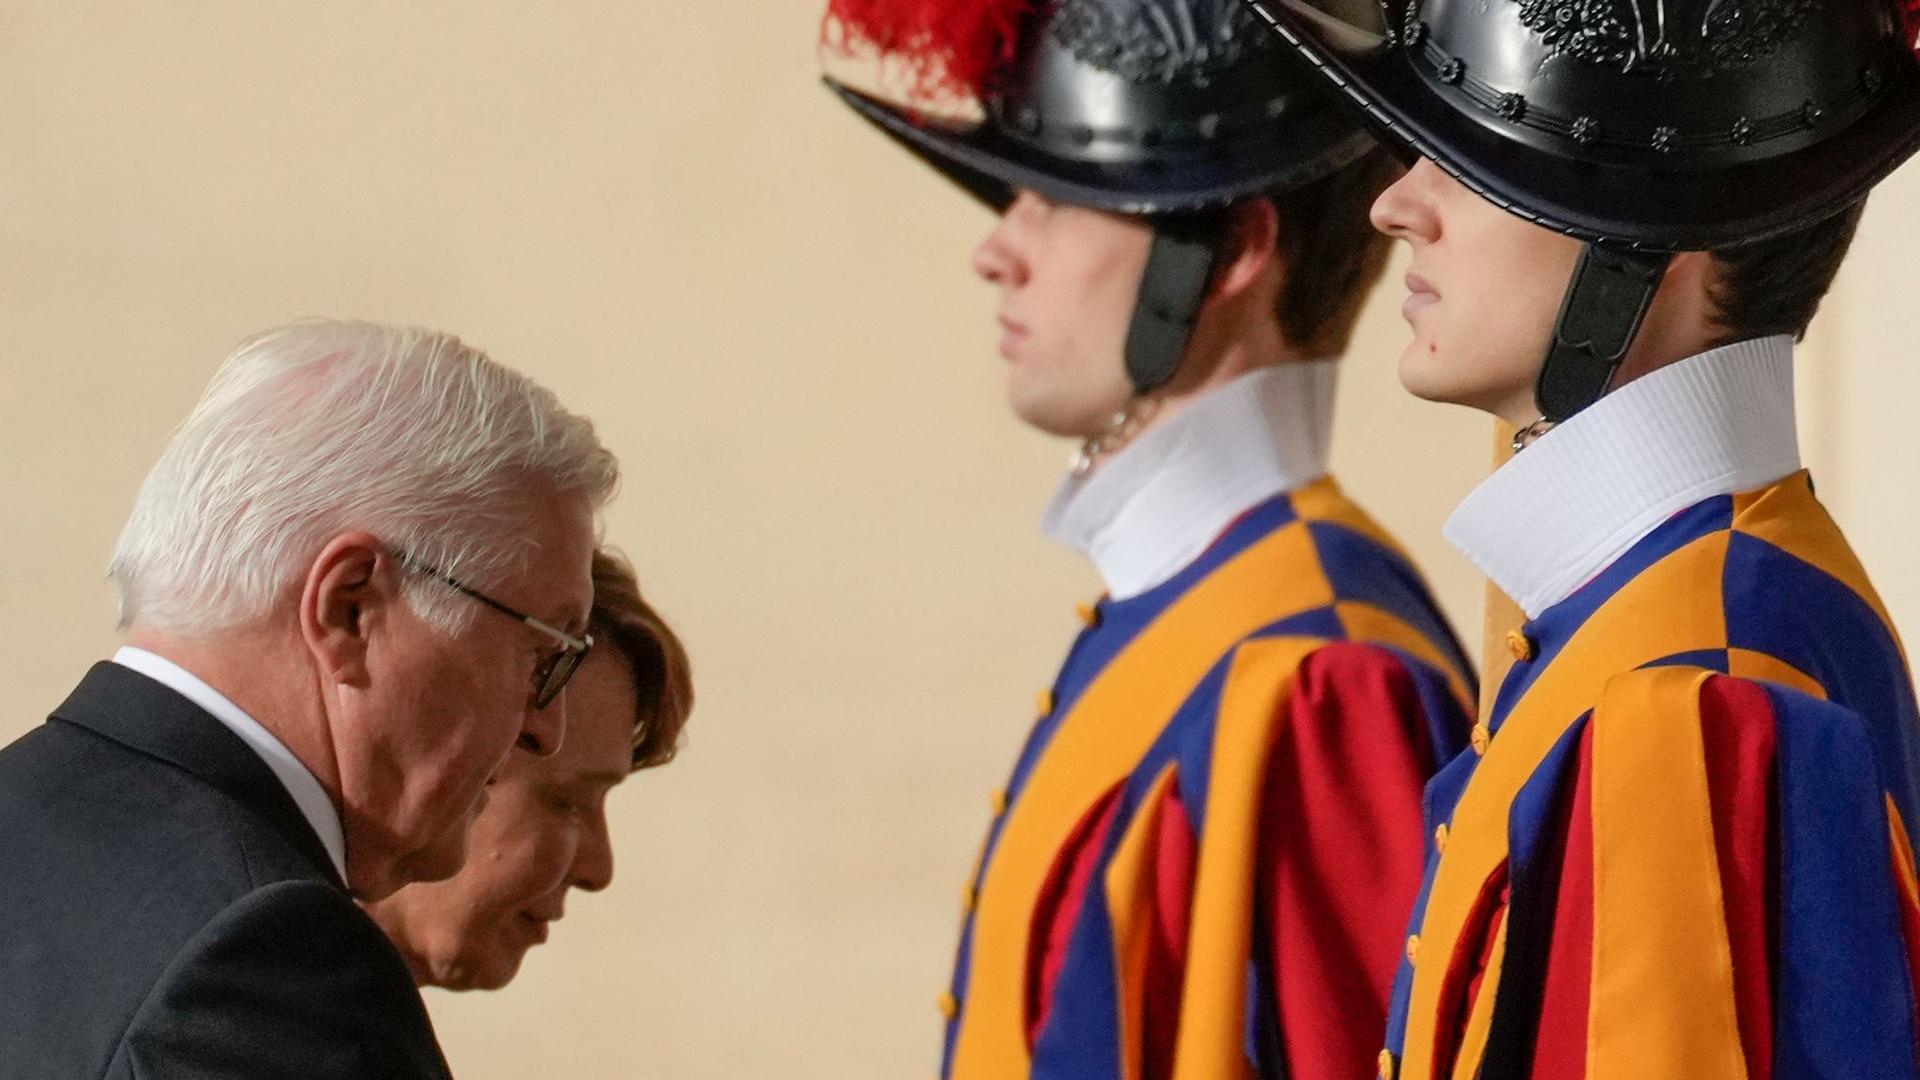 Bundespräsident Frank-Walter Steinmeier (l.) und seine Frau Elke Büdenbender treffen im Vatikan ein.